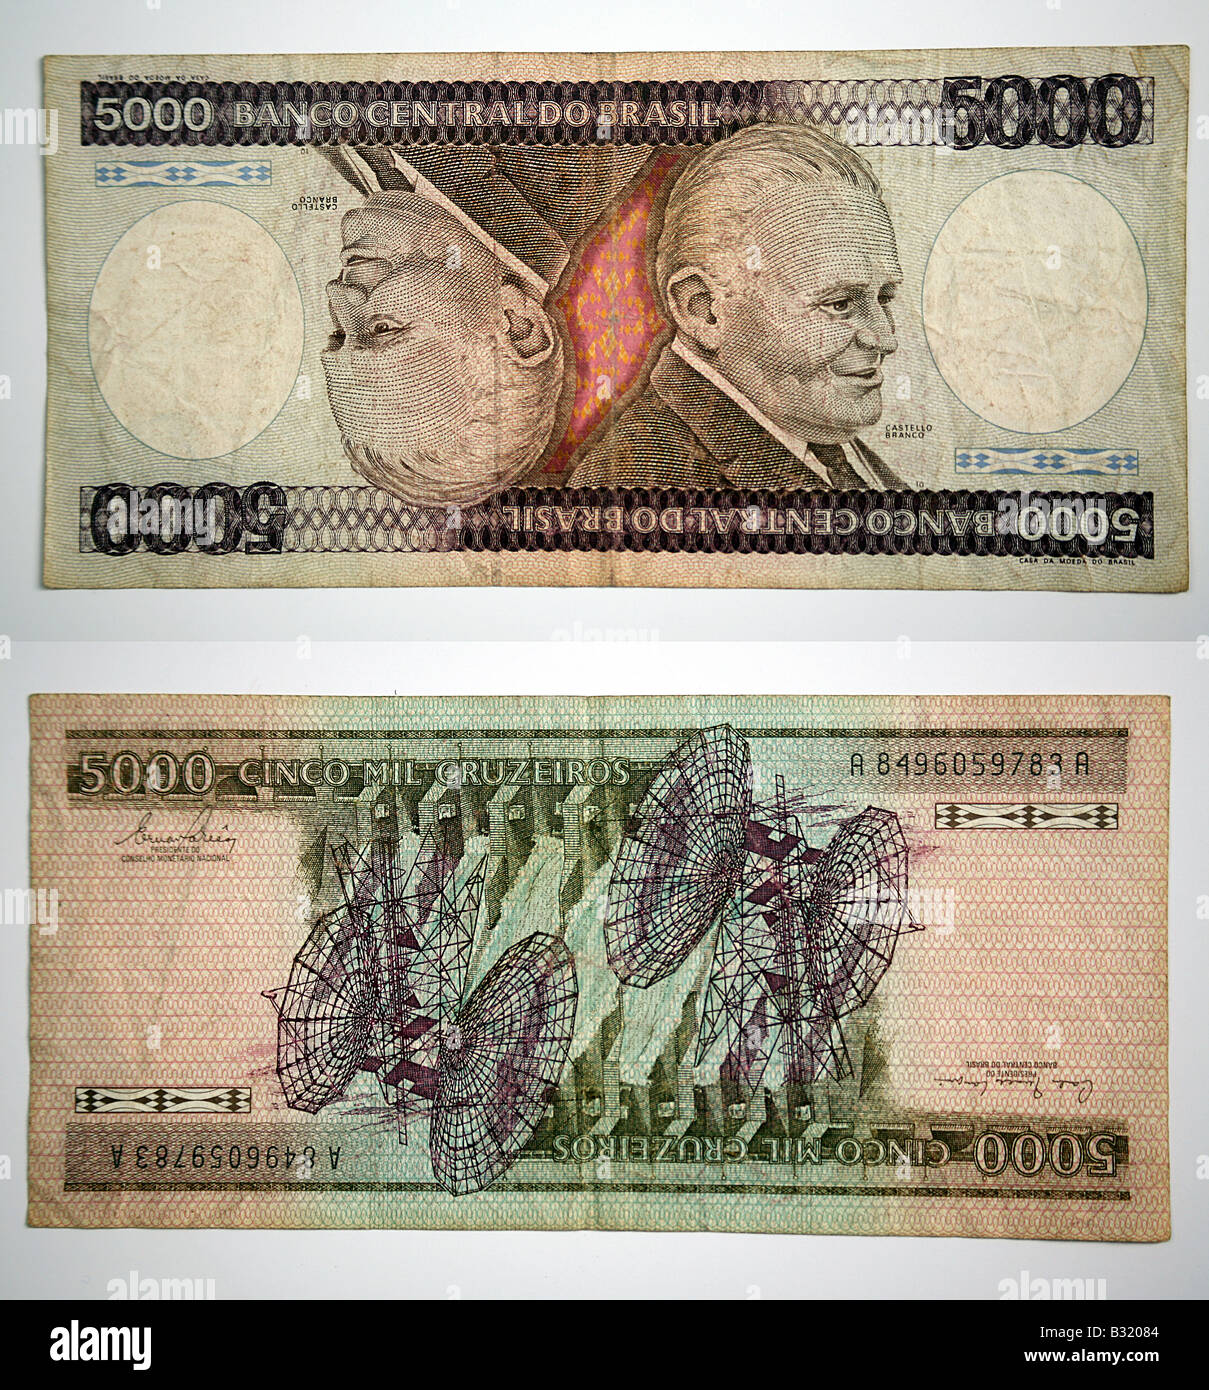 Brazilian Currency 5000 Banco Central Do Brasil Stock Photo